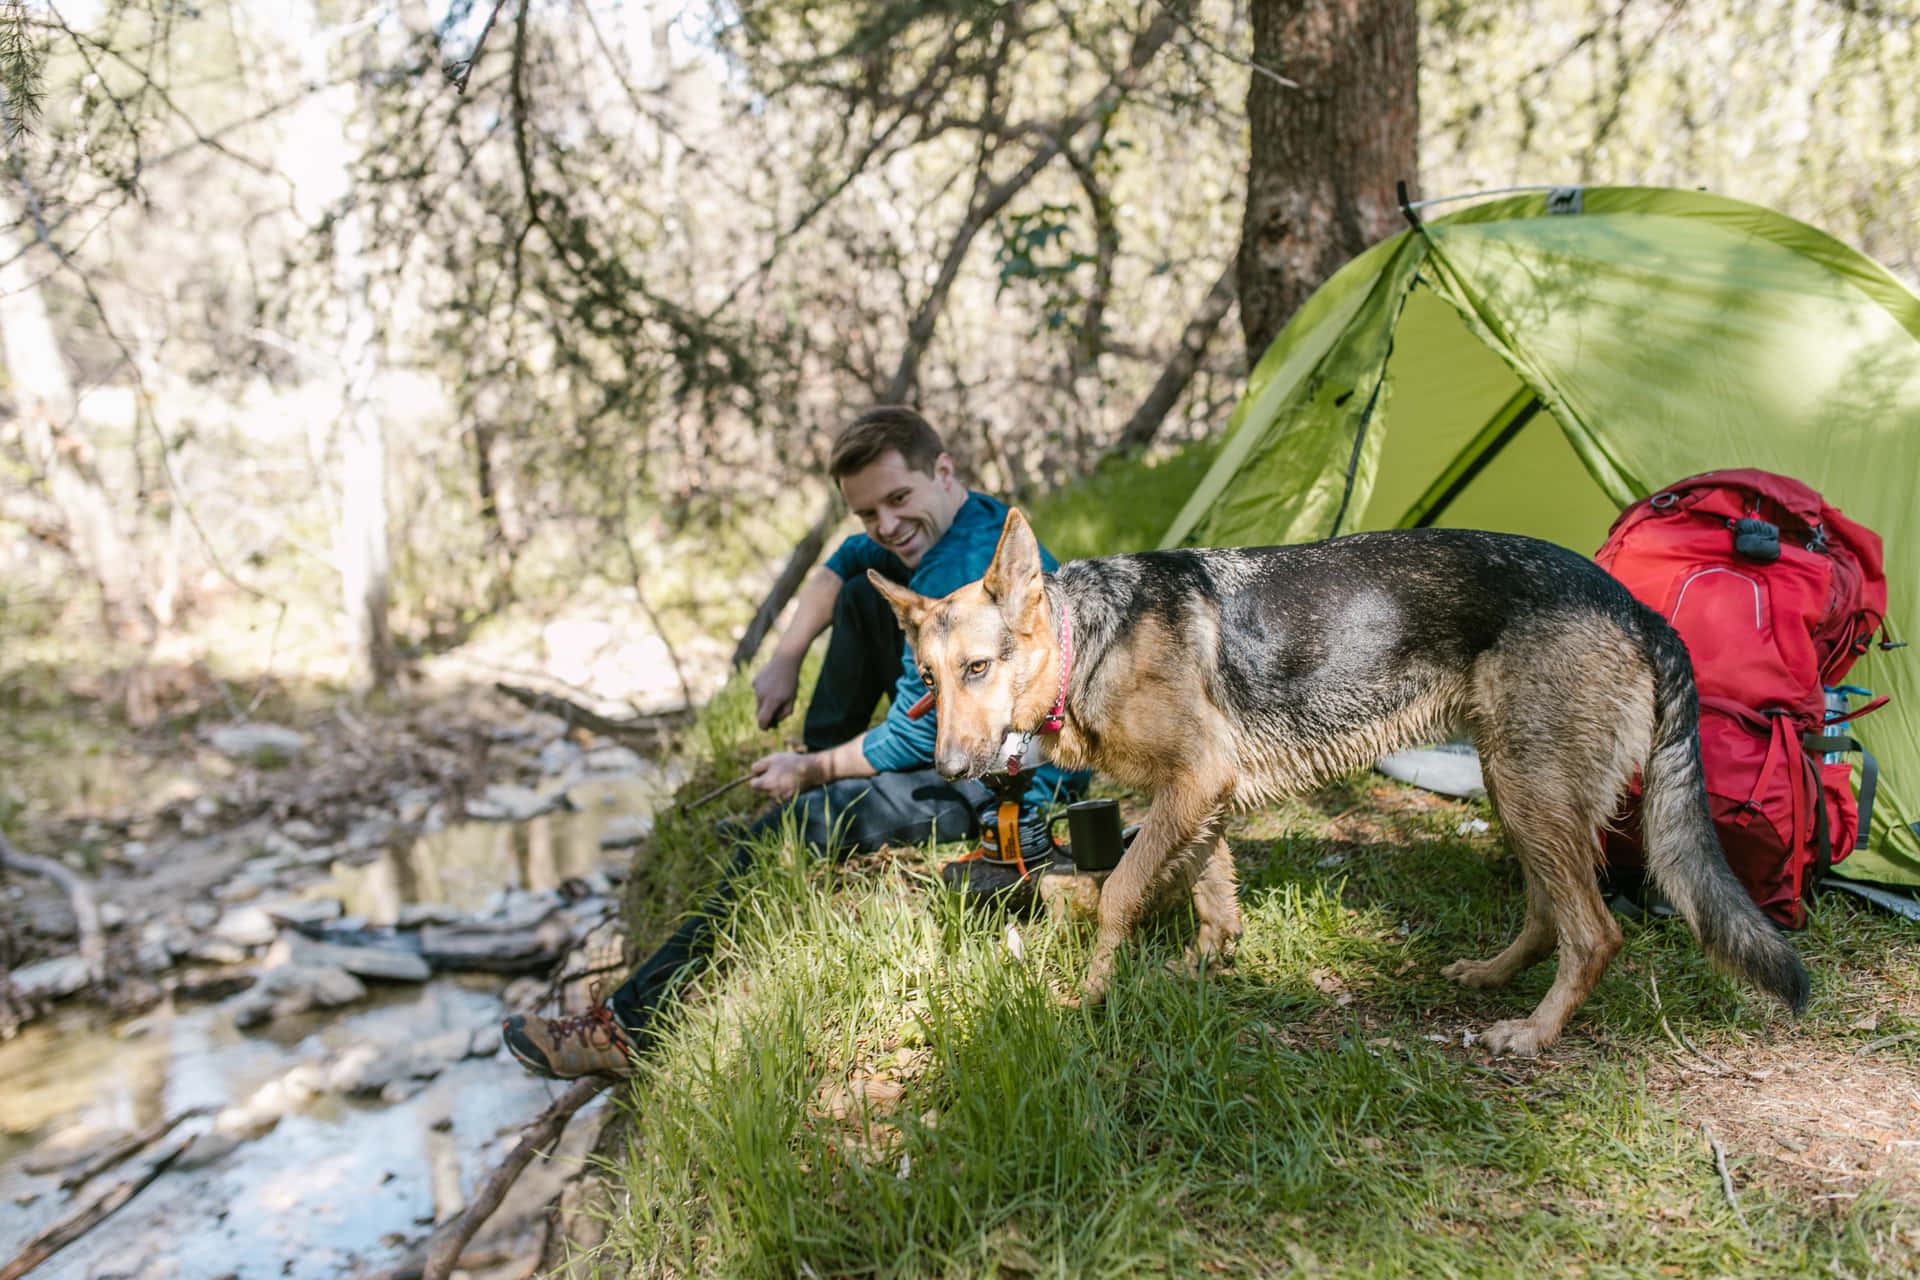 Einmann Und Ein Hund Sitzen In Der Nähe Eines Zeltes.